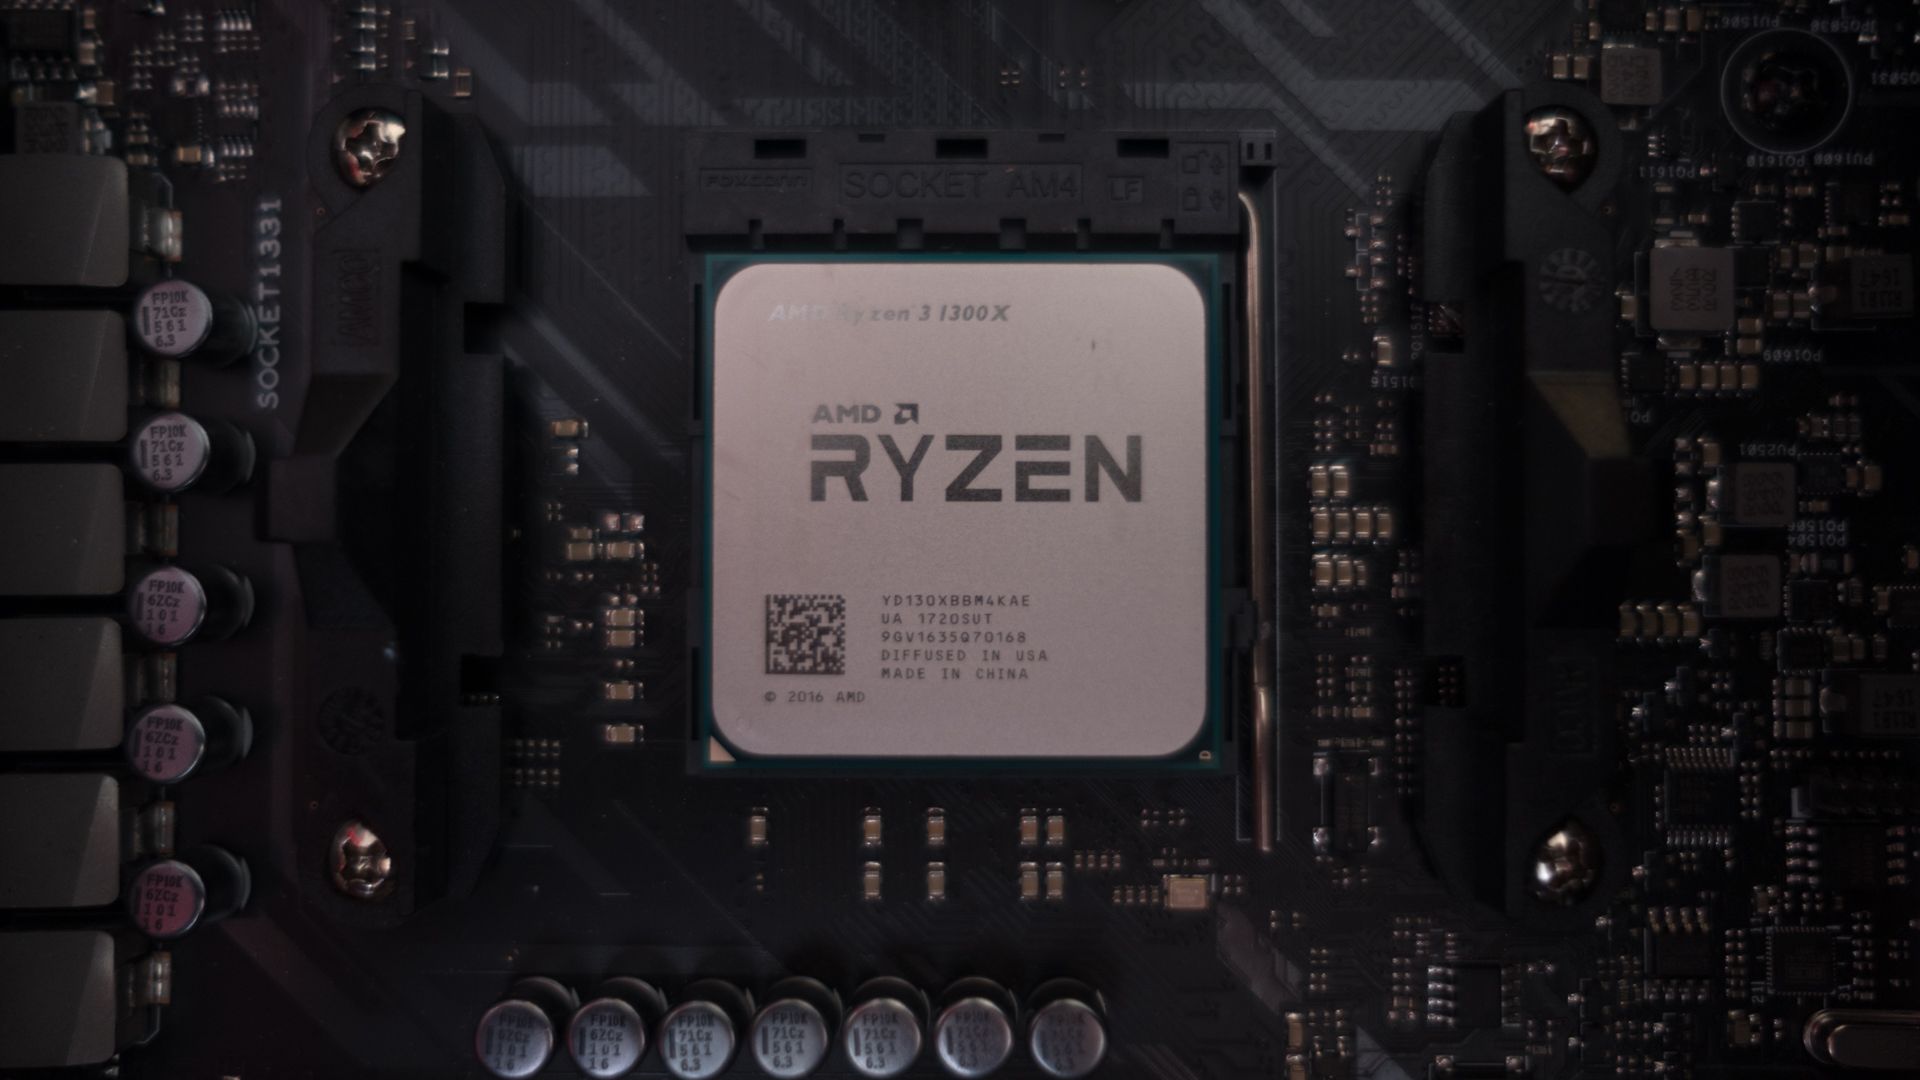 Райзен какой сокет. AMD Ryzen 3 Quad Core 1300x. AMD Ryzen 3 Pro 1300 Quad-Core Processor 3.50 GHZ. AMD Ryzen 3 Pro 1200 Quad-Core Processor 3.10 GHZ. Ryzen 7000 сокет.